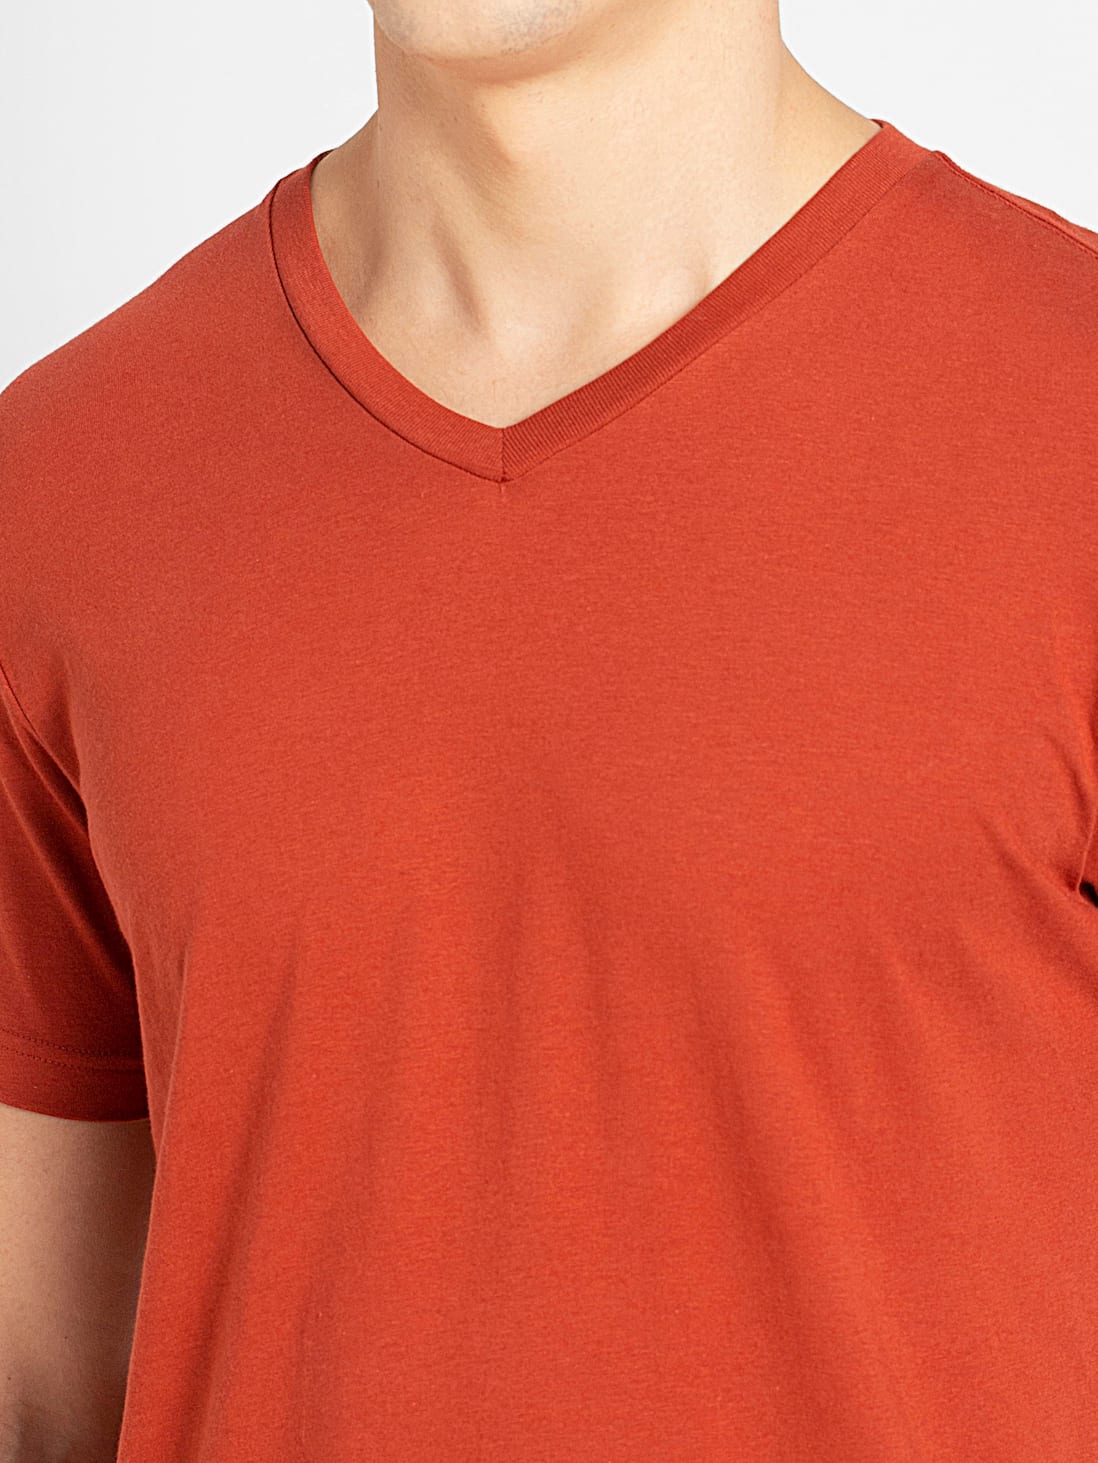 Buy Mens Super Combed Cotton Rich Solid V Neck Half Sleeve T Shirt Cinnabar 2726 Jockey India